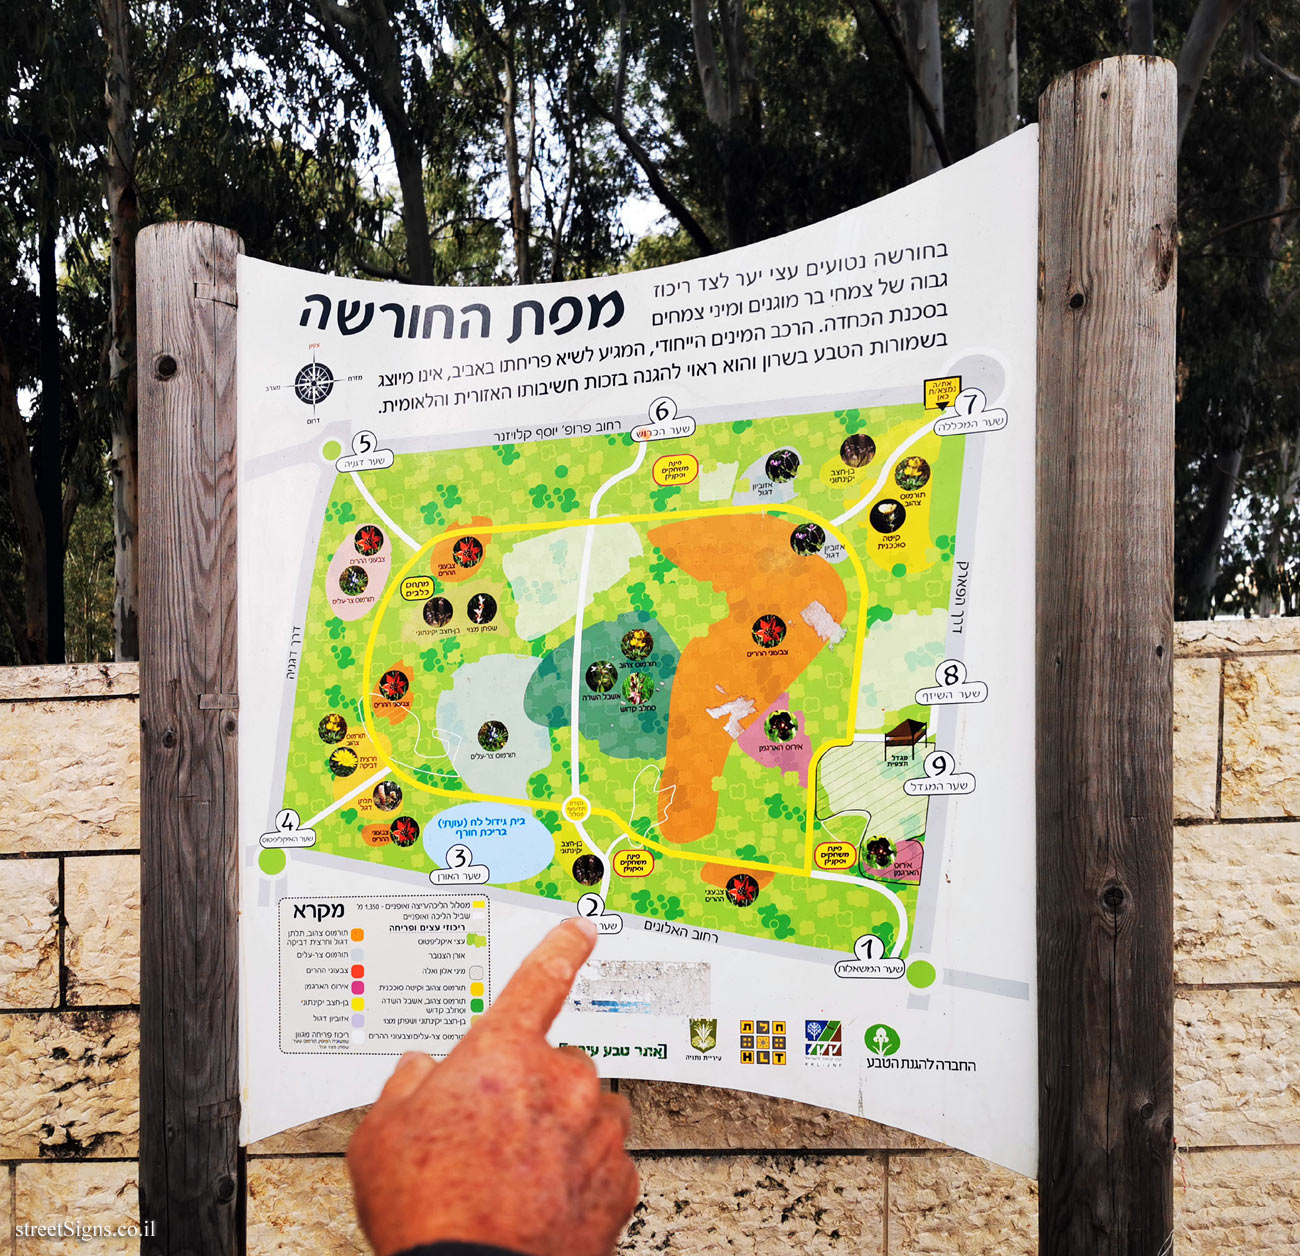 Netanya - Sergeant’s Grove - Map of the grove